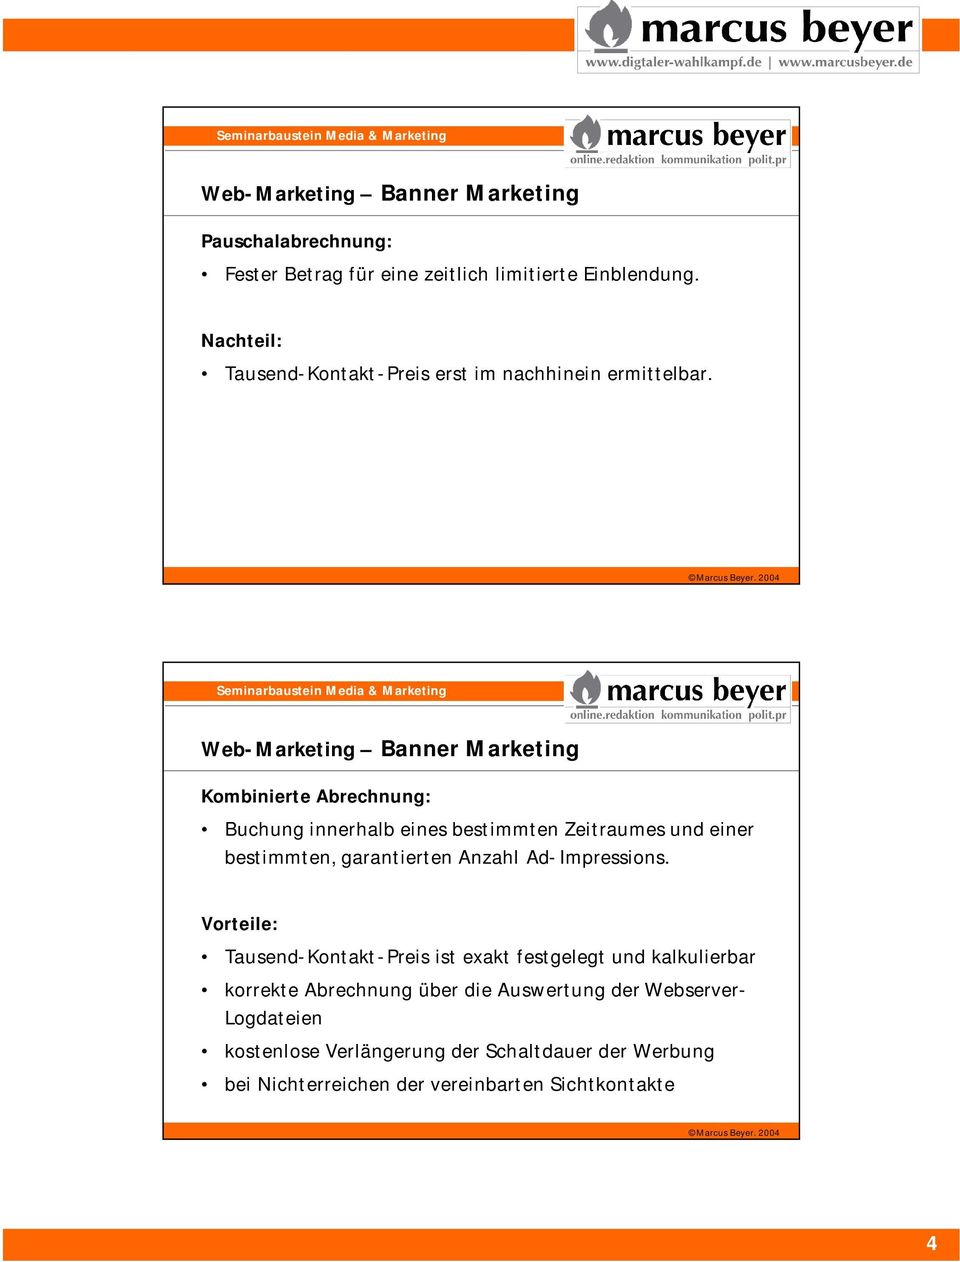 Web-Marketing Banner Marketing Kombinierte Abrechnung: Buchung innerhalb eines bestimmten Zeitraumes und einer bestimmten, garantierten Anzahl